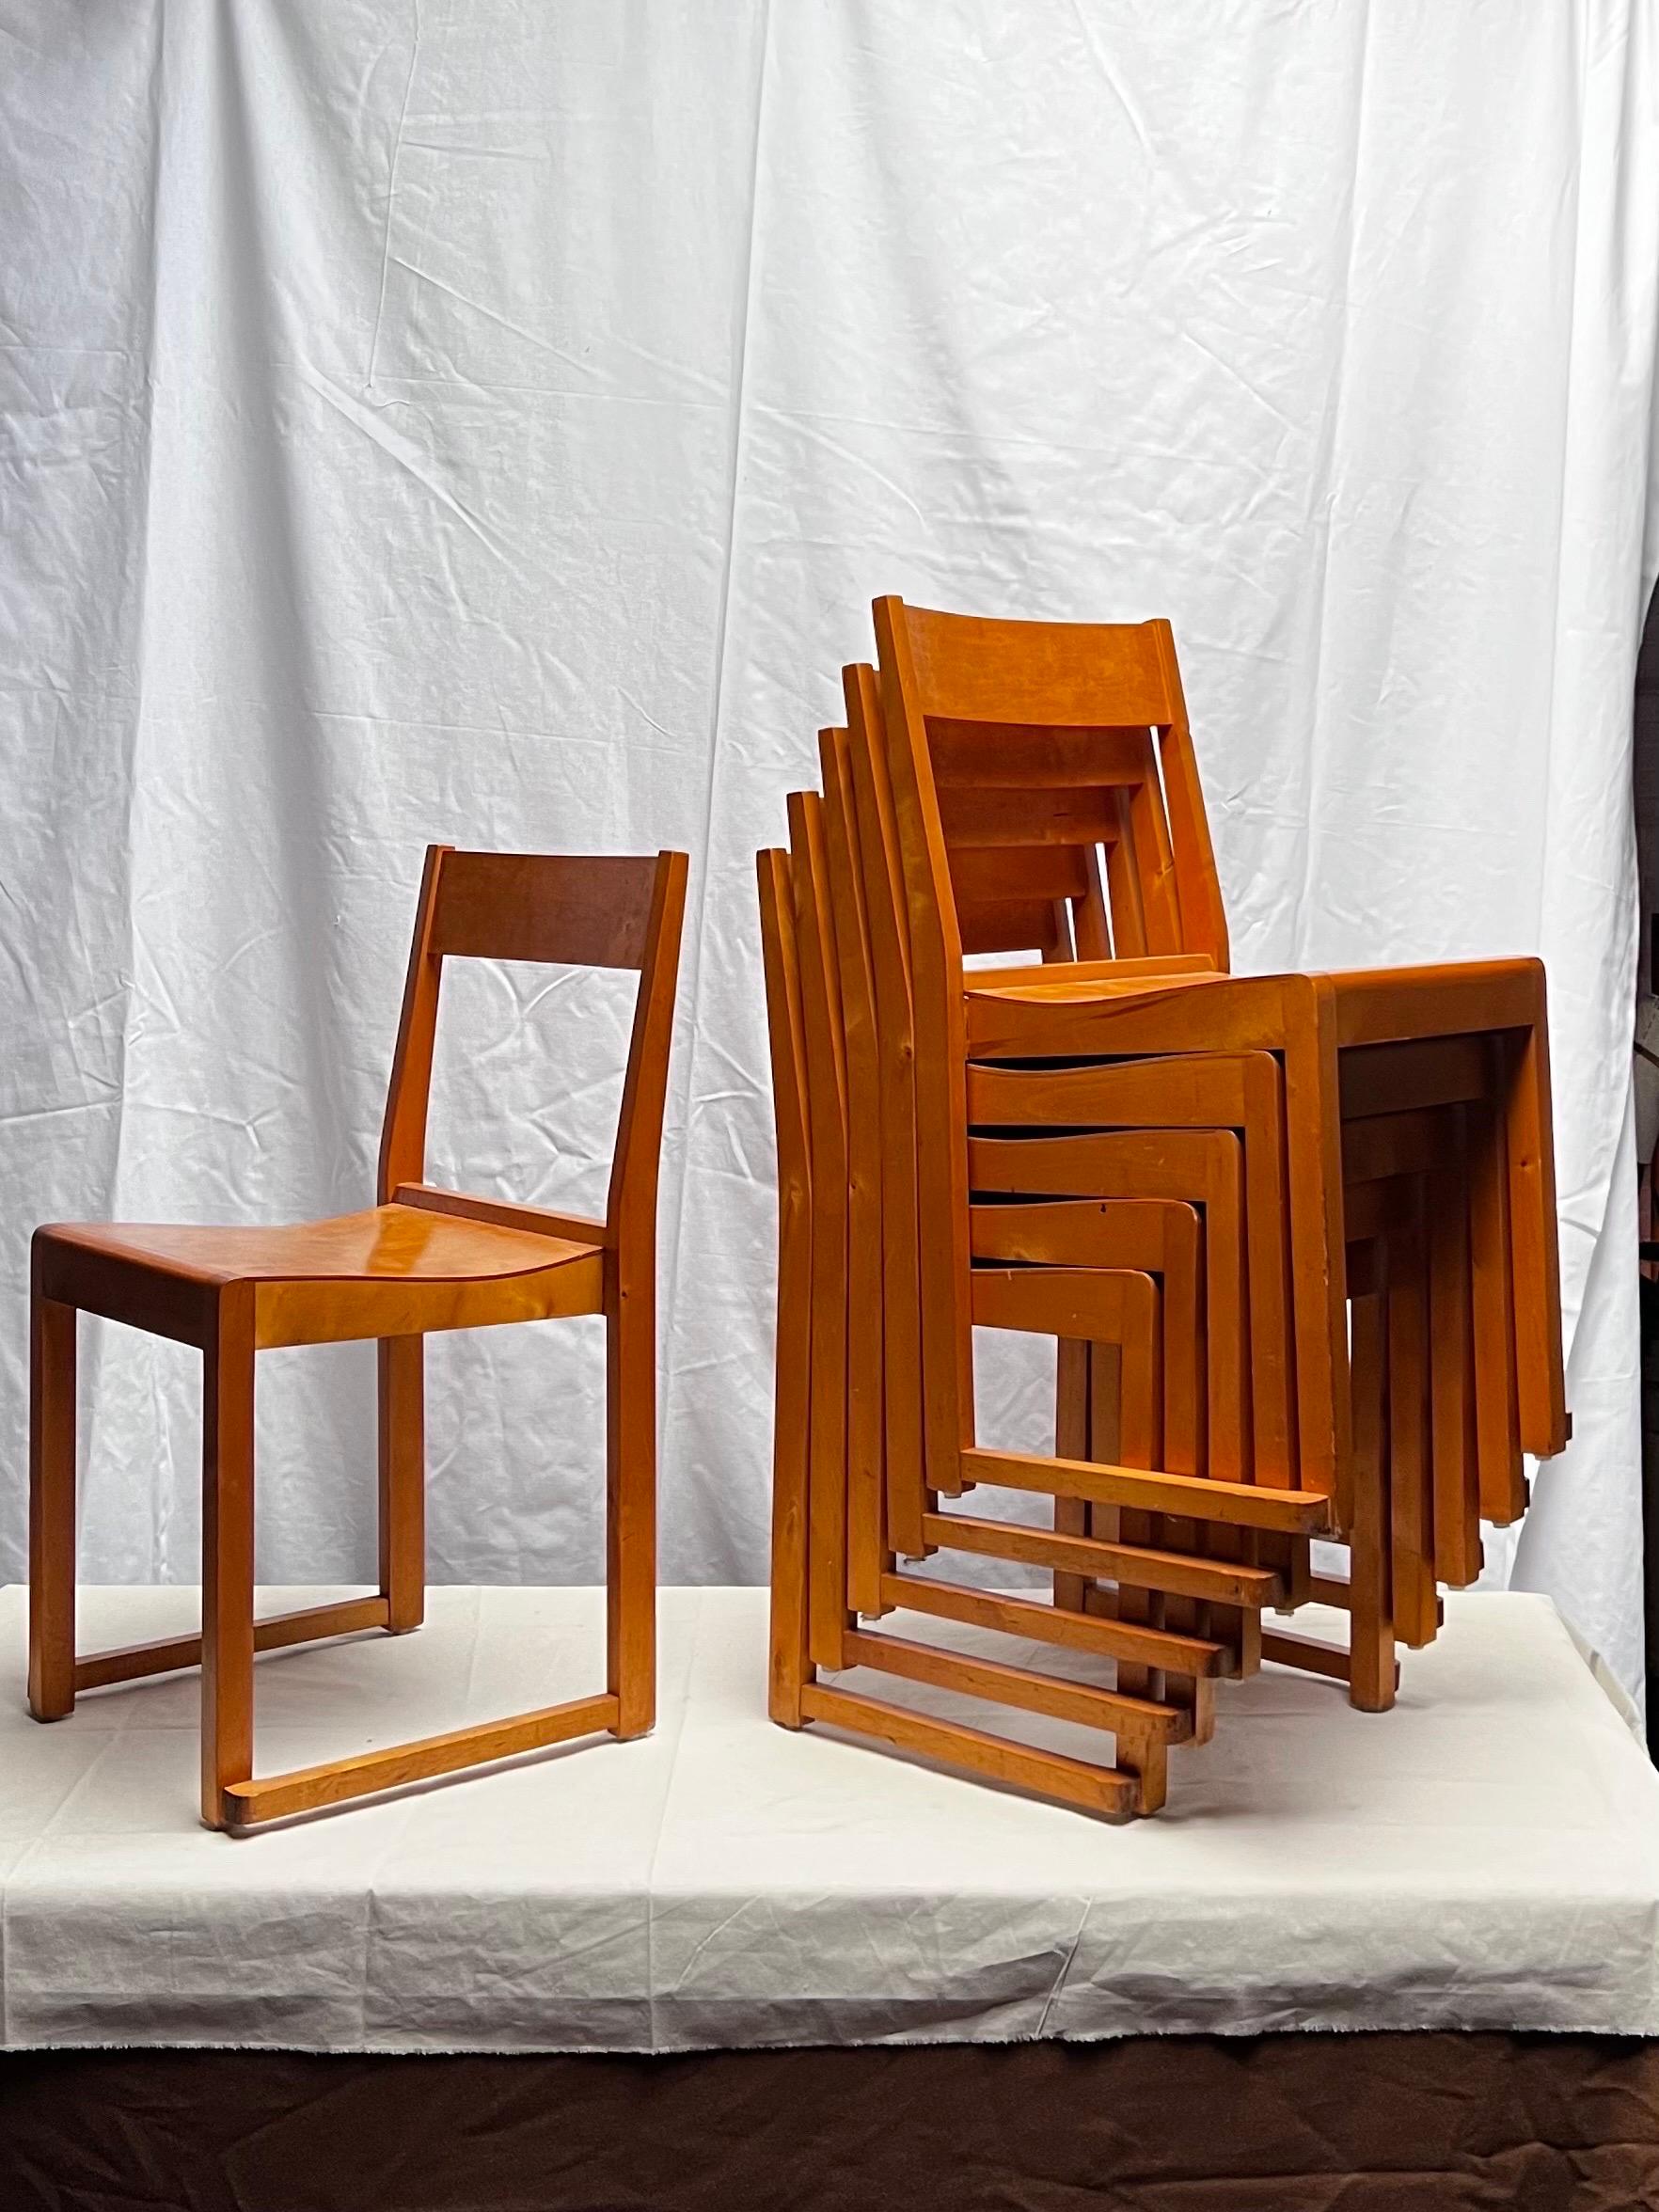 Lot de 6 chaises empilables minimales et élégantes, légères et confortables, de l'architecte moderniste Sven Markelius. Conçu et réalisé pour l'orchestre du théâtre d'Helsingborg en Suède en 1931. Il s'agit de bouleaux teintés en brun miel en très